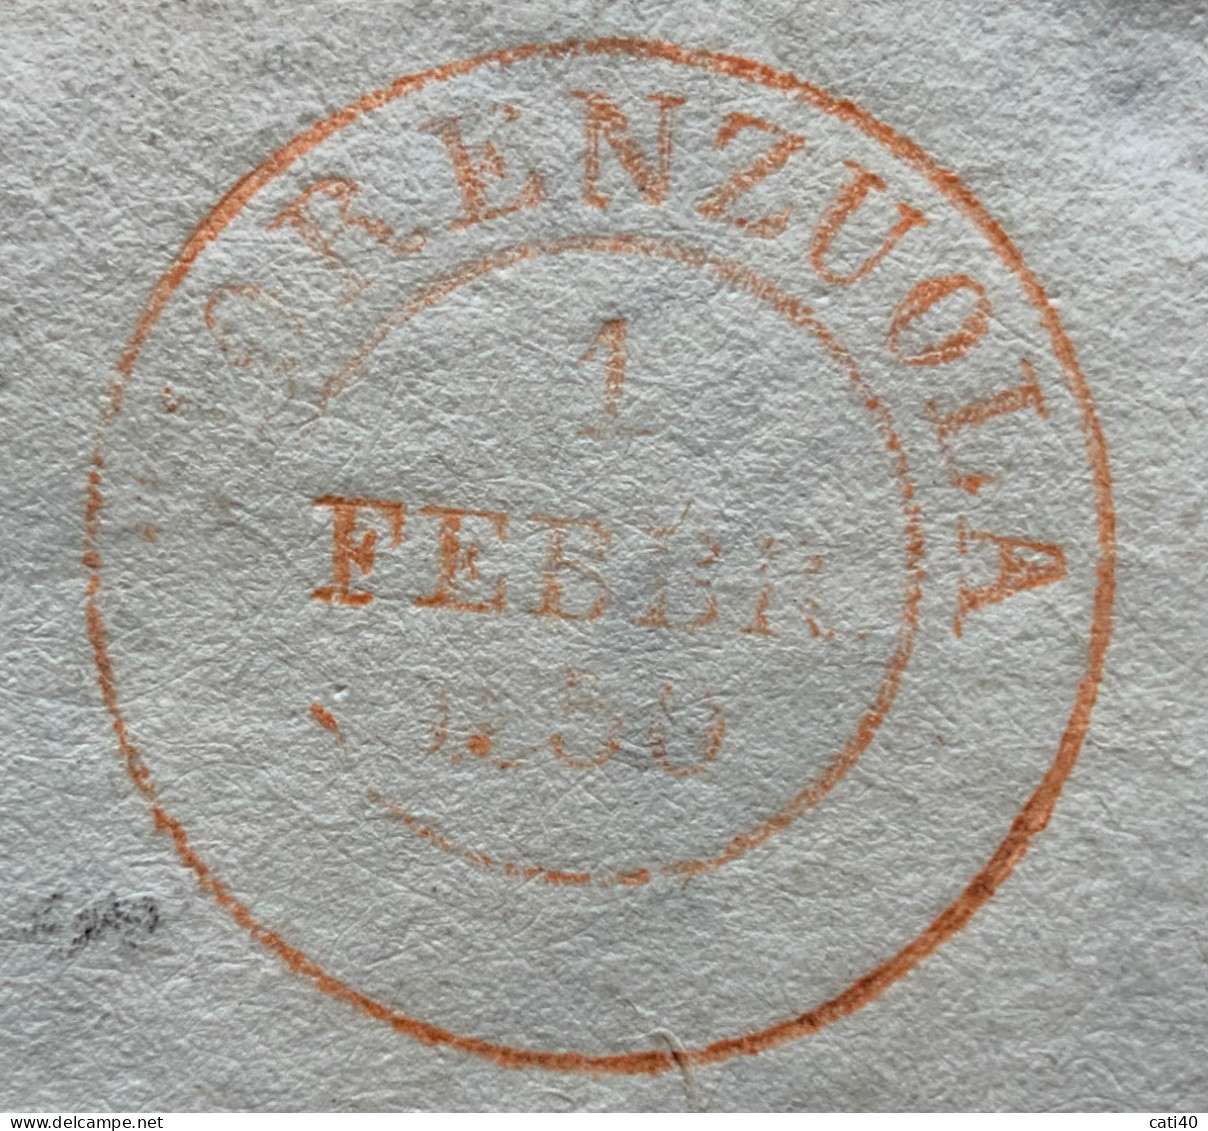 FIORENZUOLA 1 FEBBRAIO 1850 D.c. Rosso Su Lettera Completa Del COMUNE DI CADEO - PER CAORSO - Marcophilia